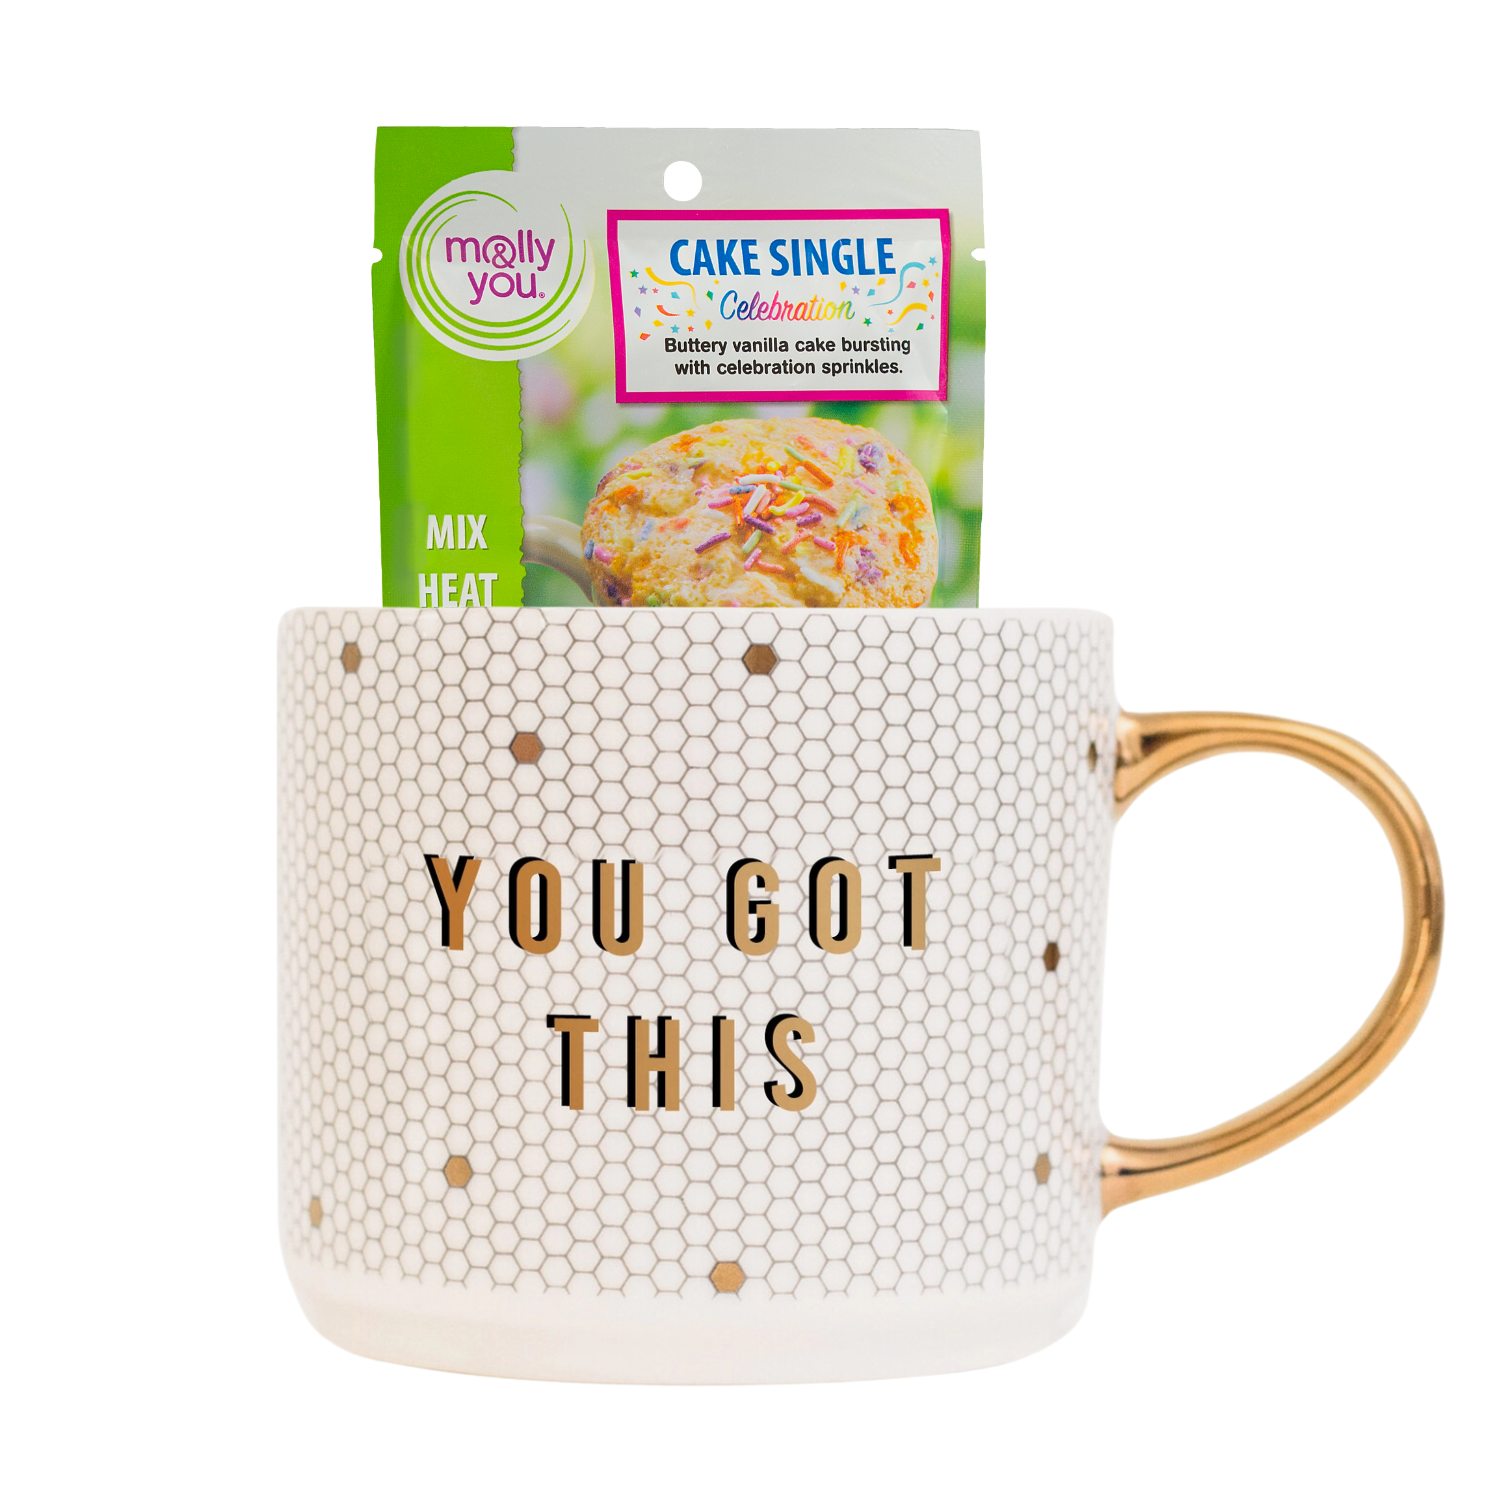 You got this tile mug with Celebration Mug Cake